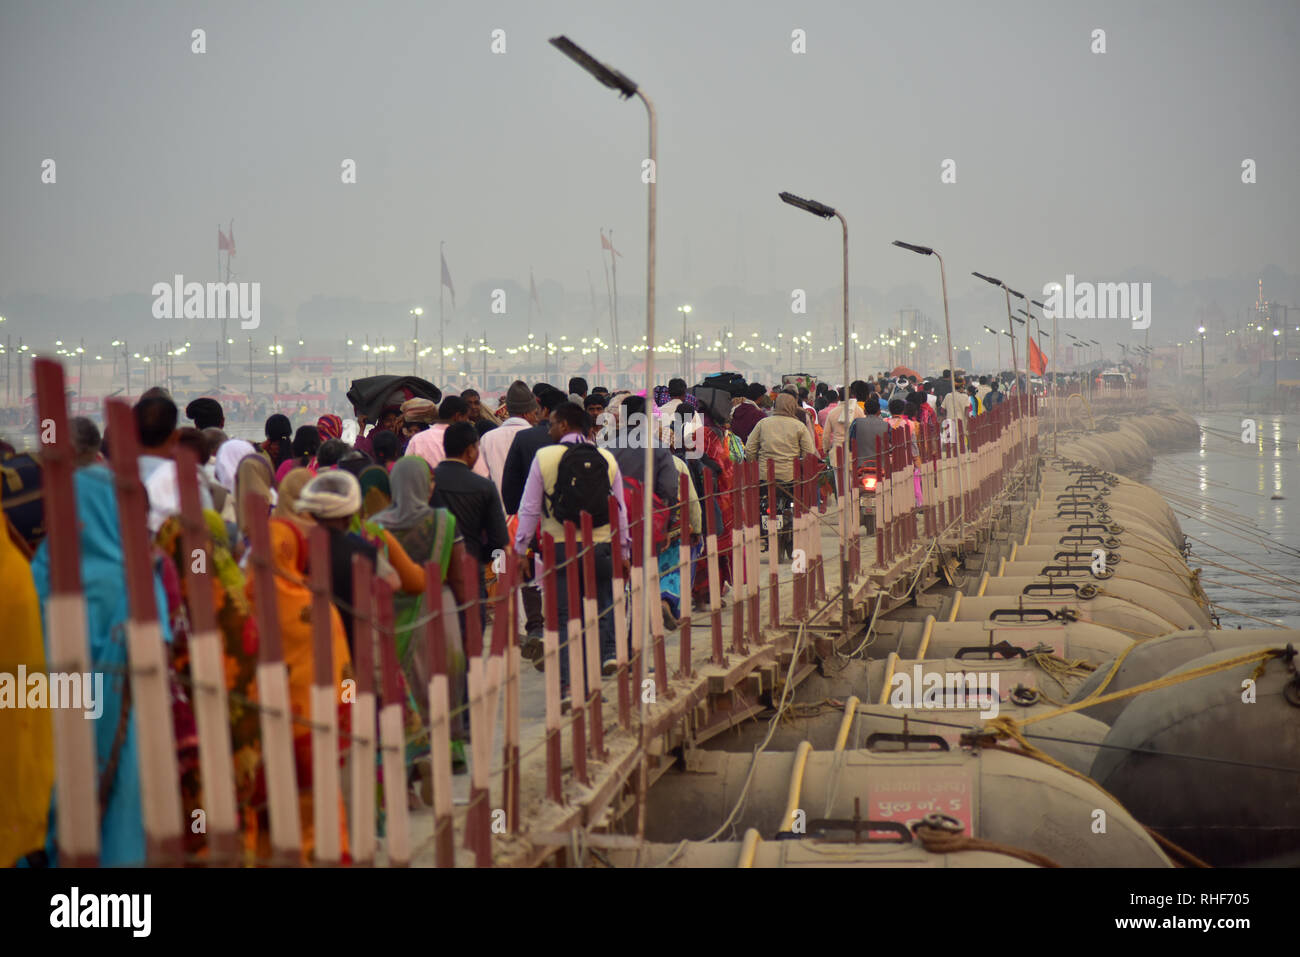 Pilger gesehen über die provisorische Brücke während der Wallfahrt. Kumbh Mela, einer der größten Gemeinde des Menschen auf der Erde. Lacs von Menschen werden erwartet am Tag der zweiten Shahi Snan am 4. Februar und Arrangements sind entsprechend in Prayagraj gemacht. Stockfoto